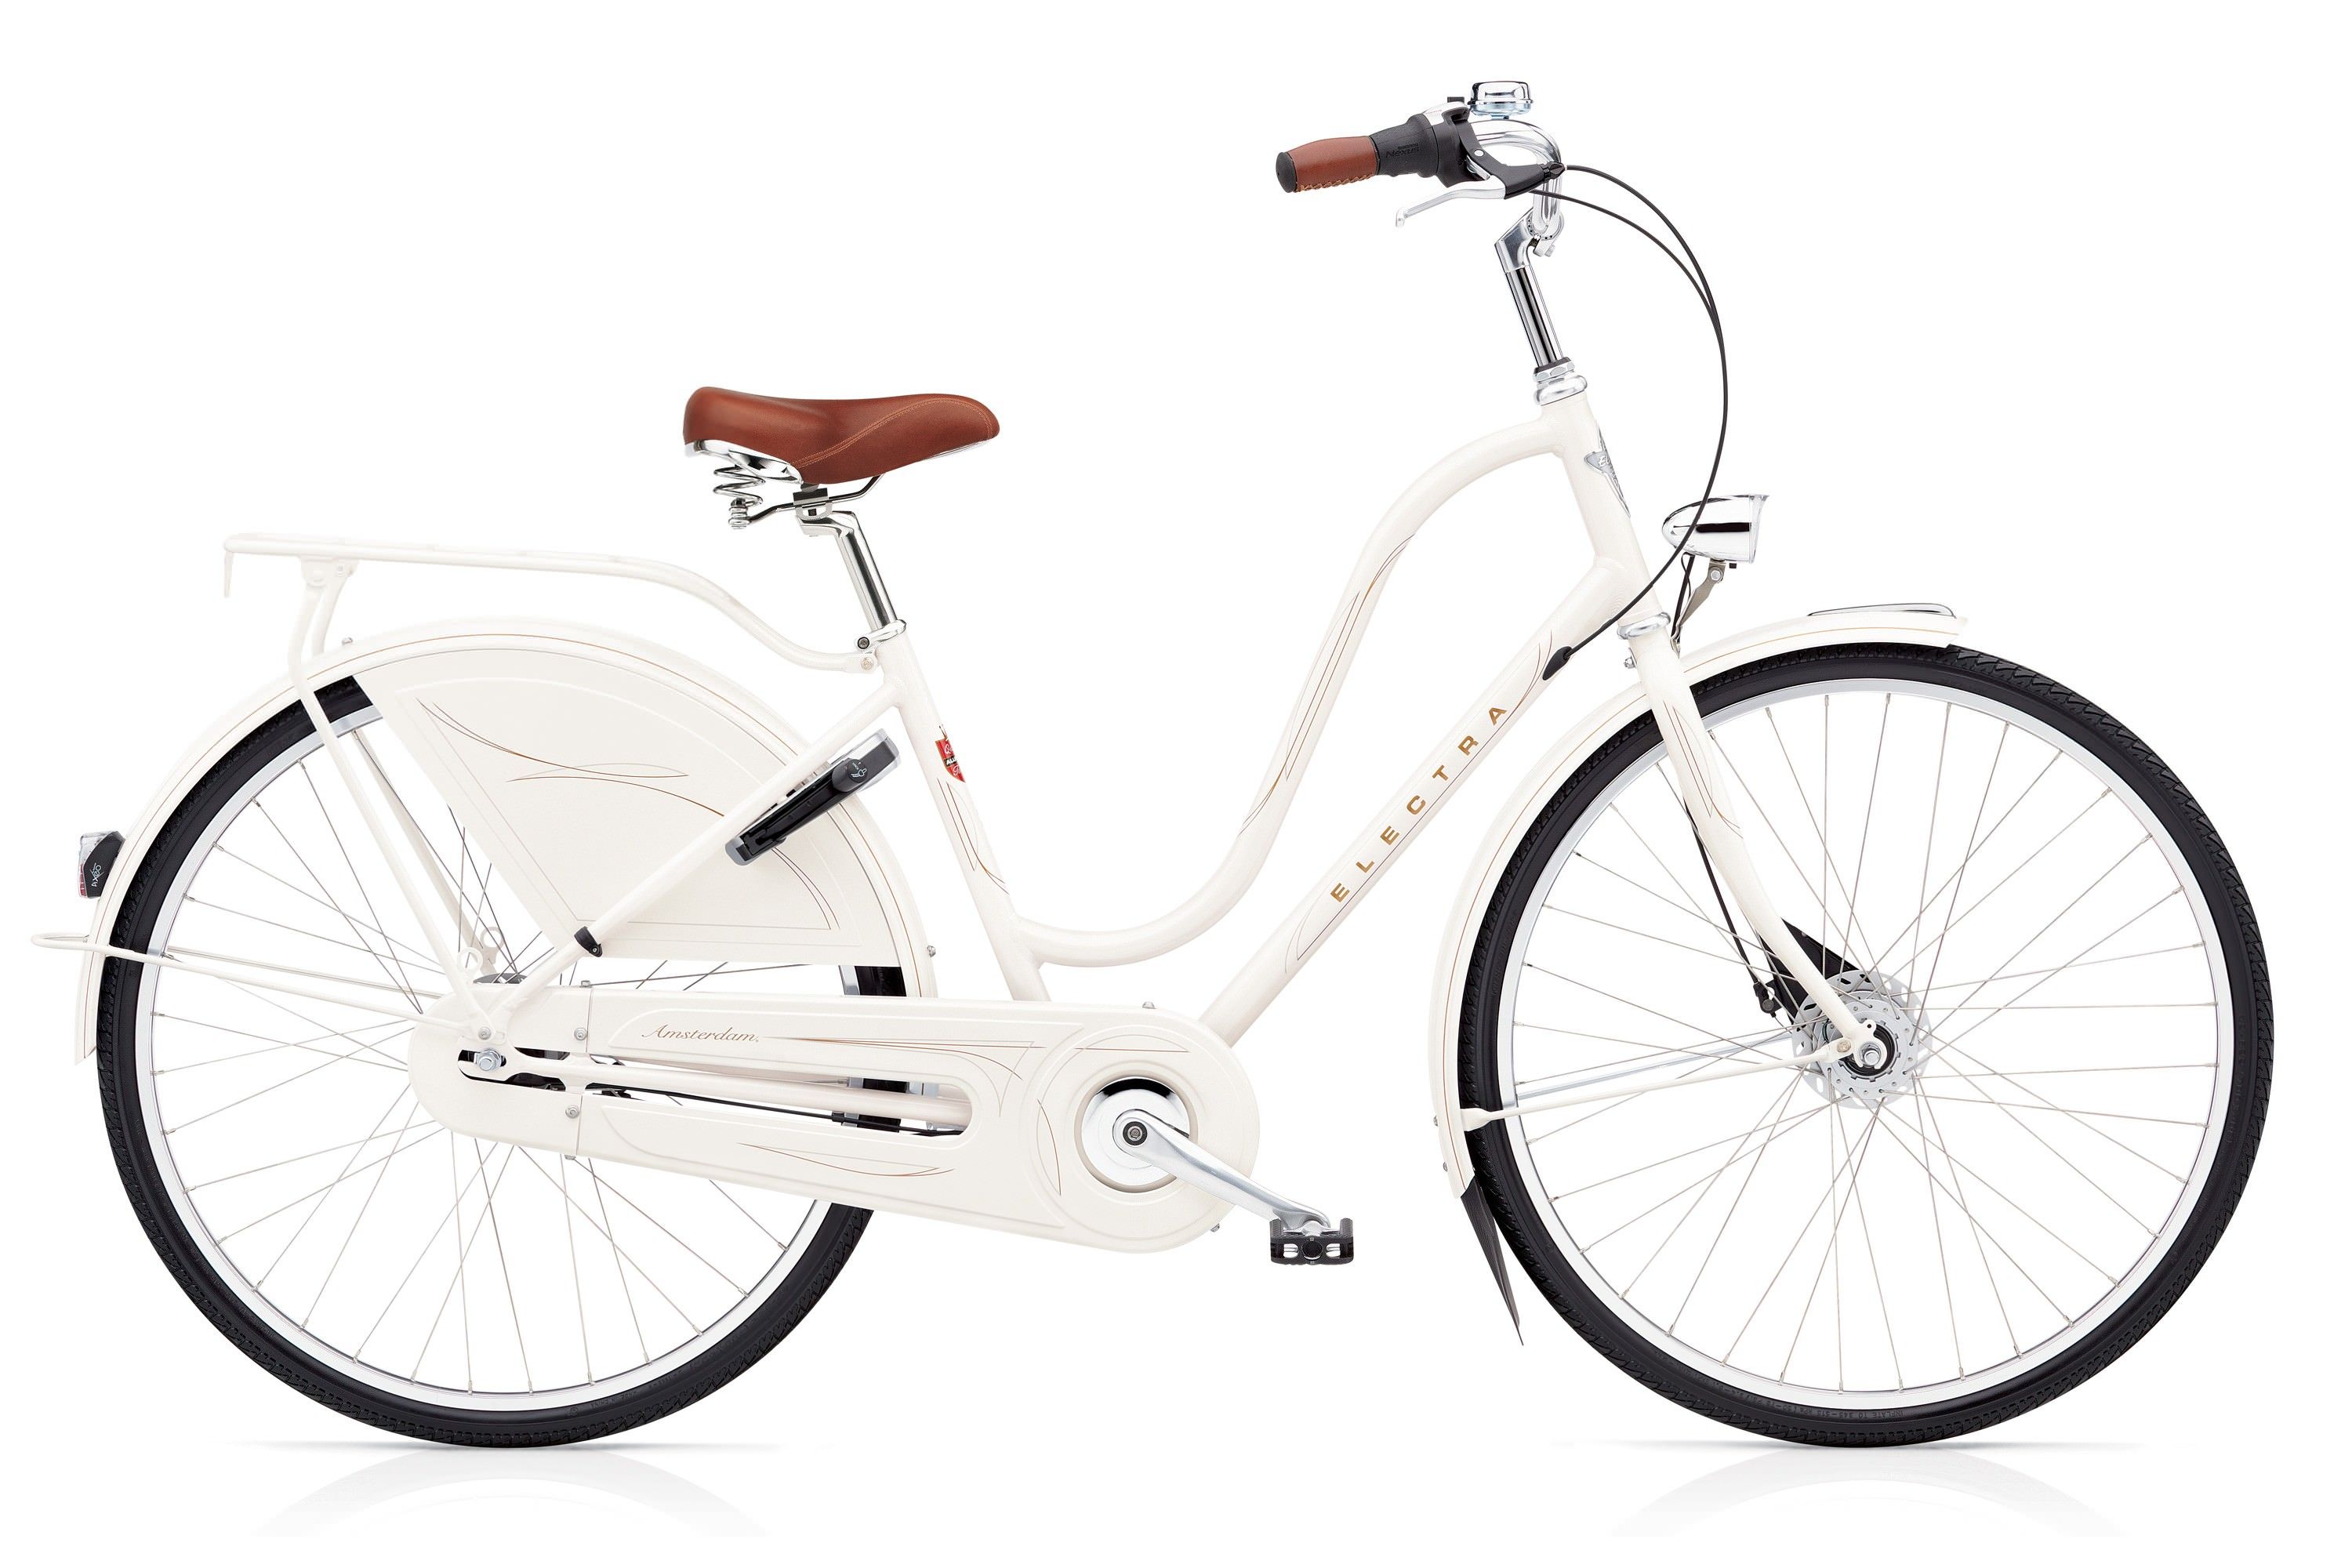  Велосипед трехколесный детский велосипед Electra Amsterdam Royal 8i Ladies 2017